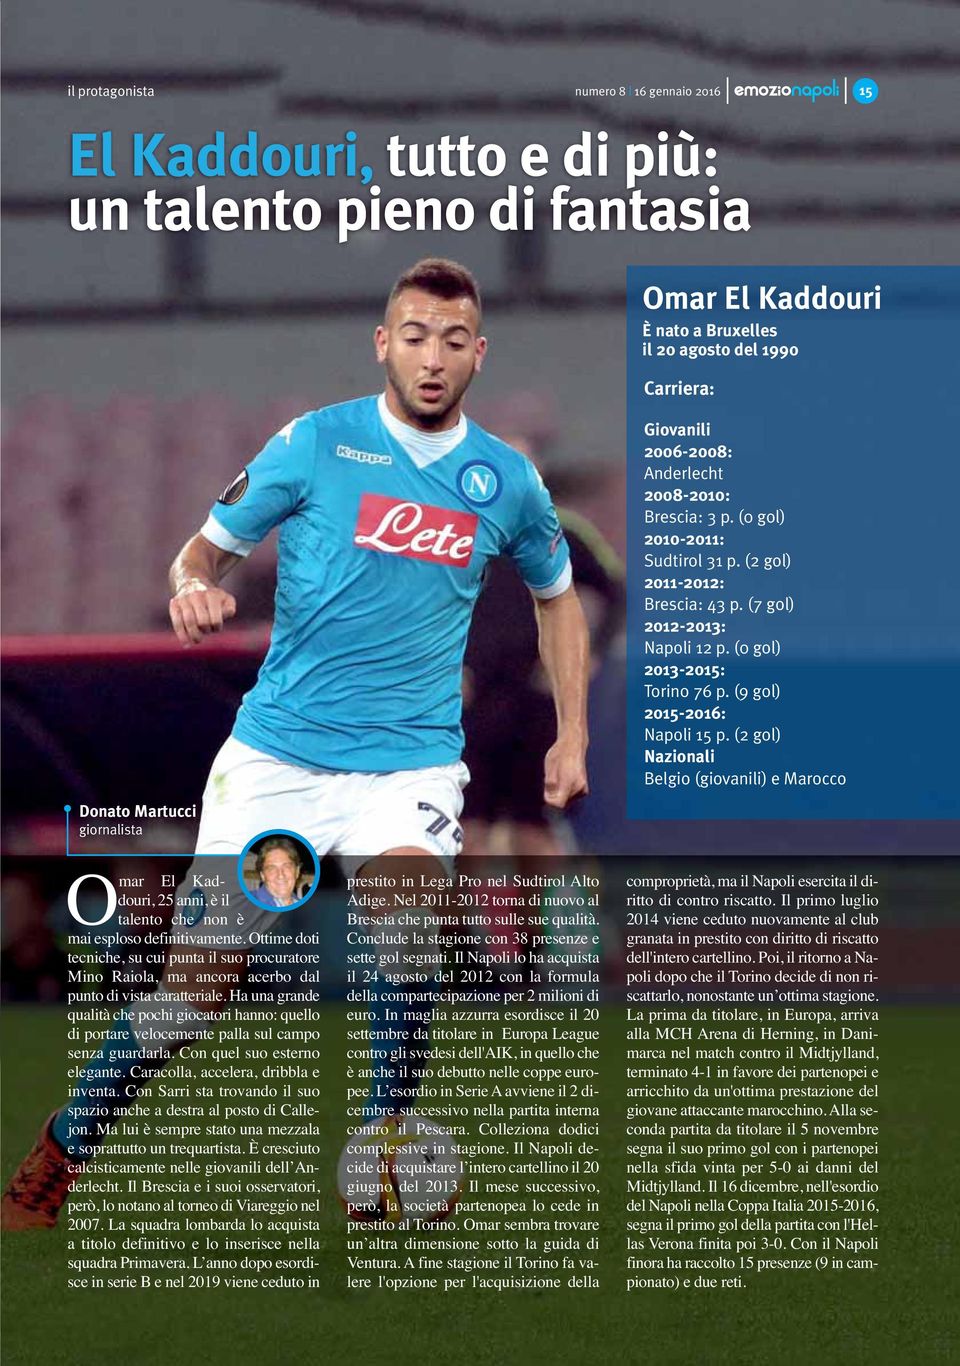 (9 gol) 2015-2016: Napoli 15 p. (2 gol) Nazionali Belgio (giovanili) e Marocco Omar El Kaddouri, 25 anni, è il talento che non è mai esploso definitivamente.